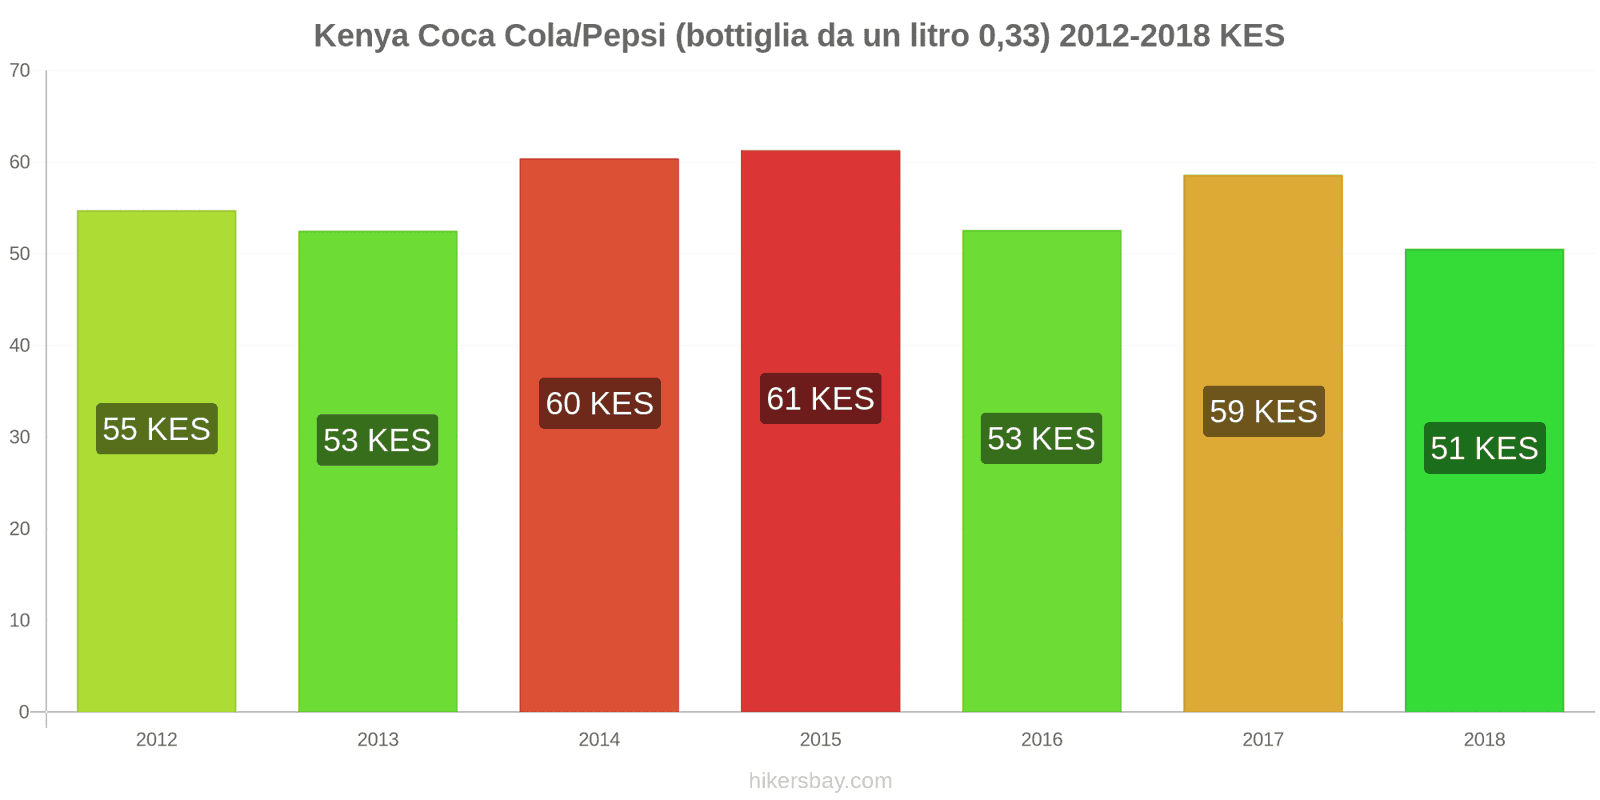 Kenya cambi di prezzo Coca-Cola/Pepsi (bottiglia da 0.33 litri) hikersbay.com